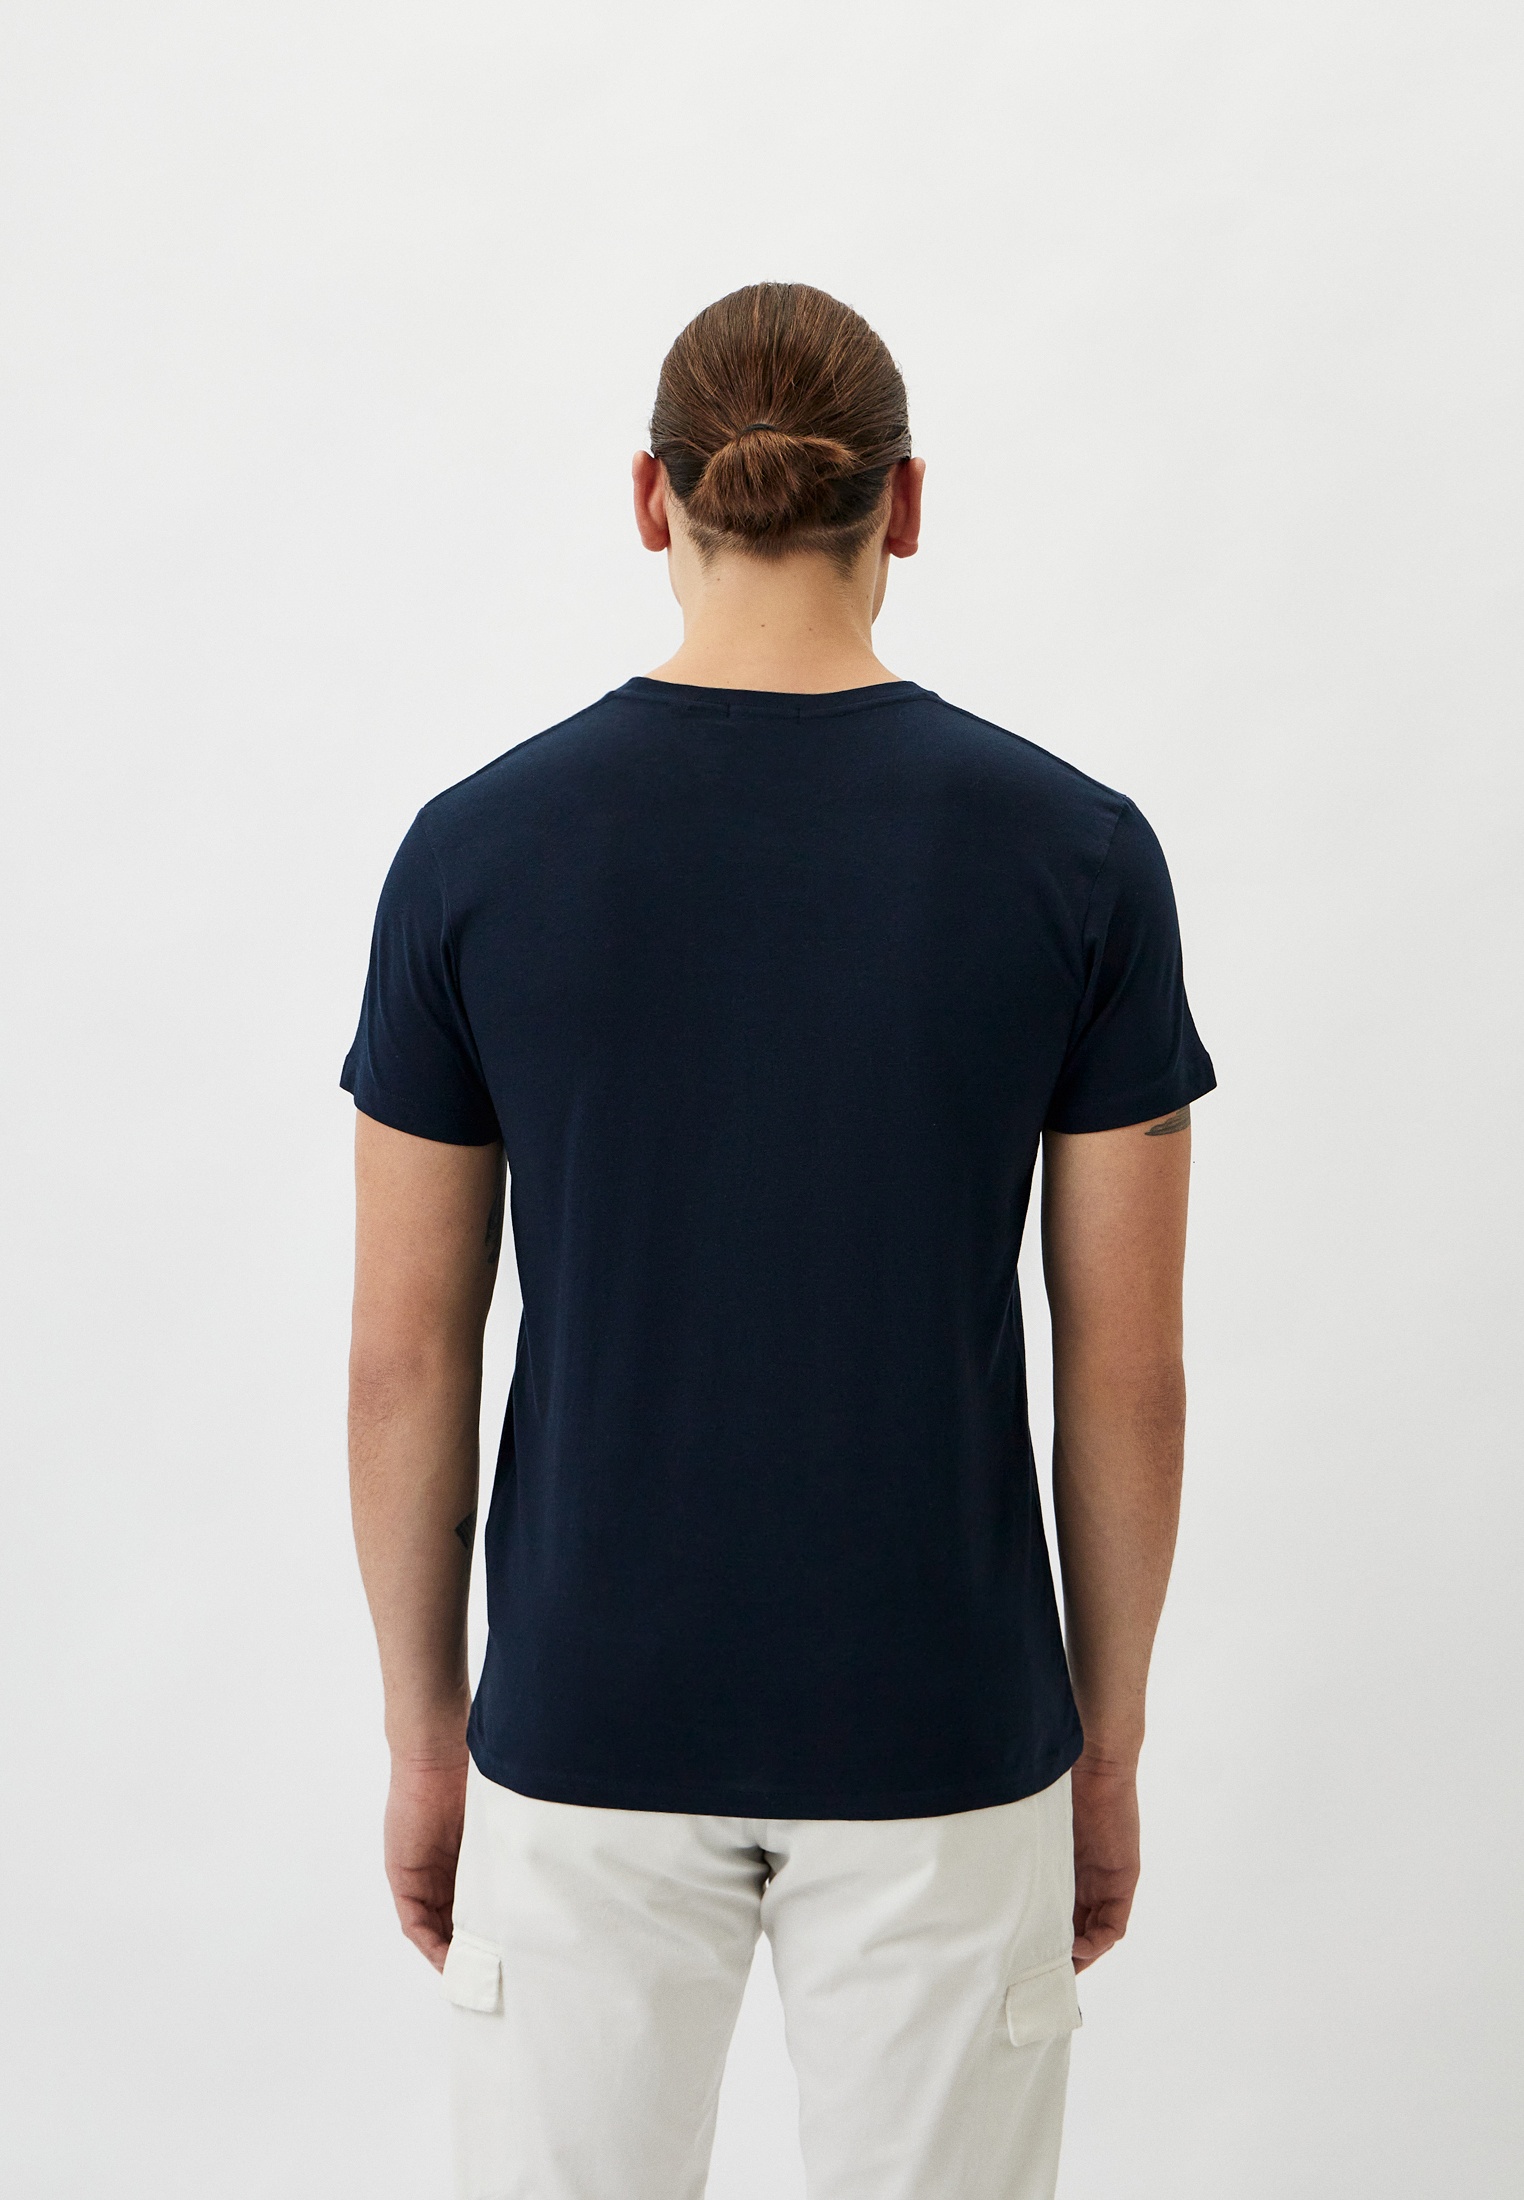 Мужская футболка Baldinini (Балдинини) B-OLM-M042: изображение 3